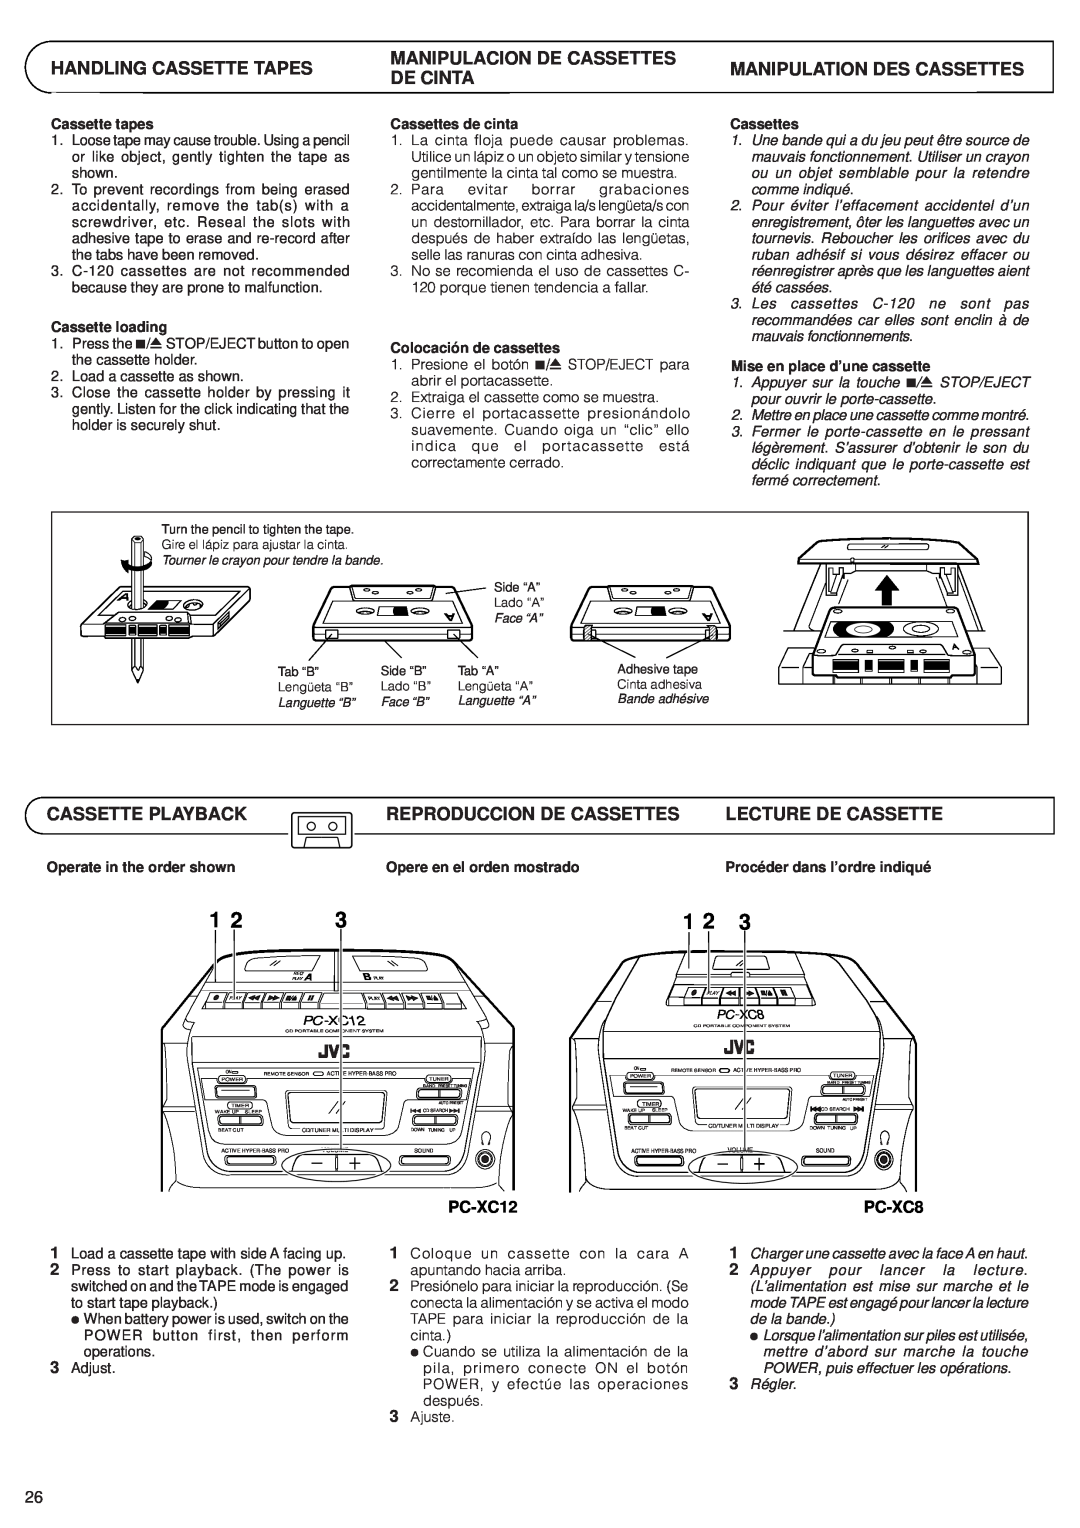 JVC PC-XC8 manual Manipulacion De Cassettes, Cassette Playback, Reproduccion De Cassettes, Lecture De Cassette, PC-XC12 